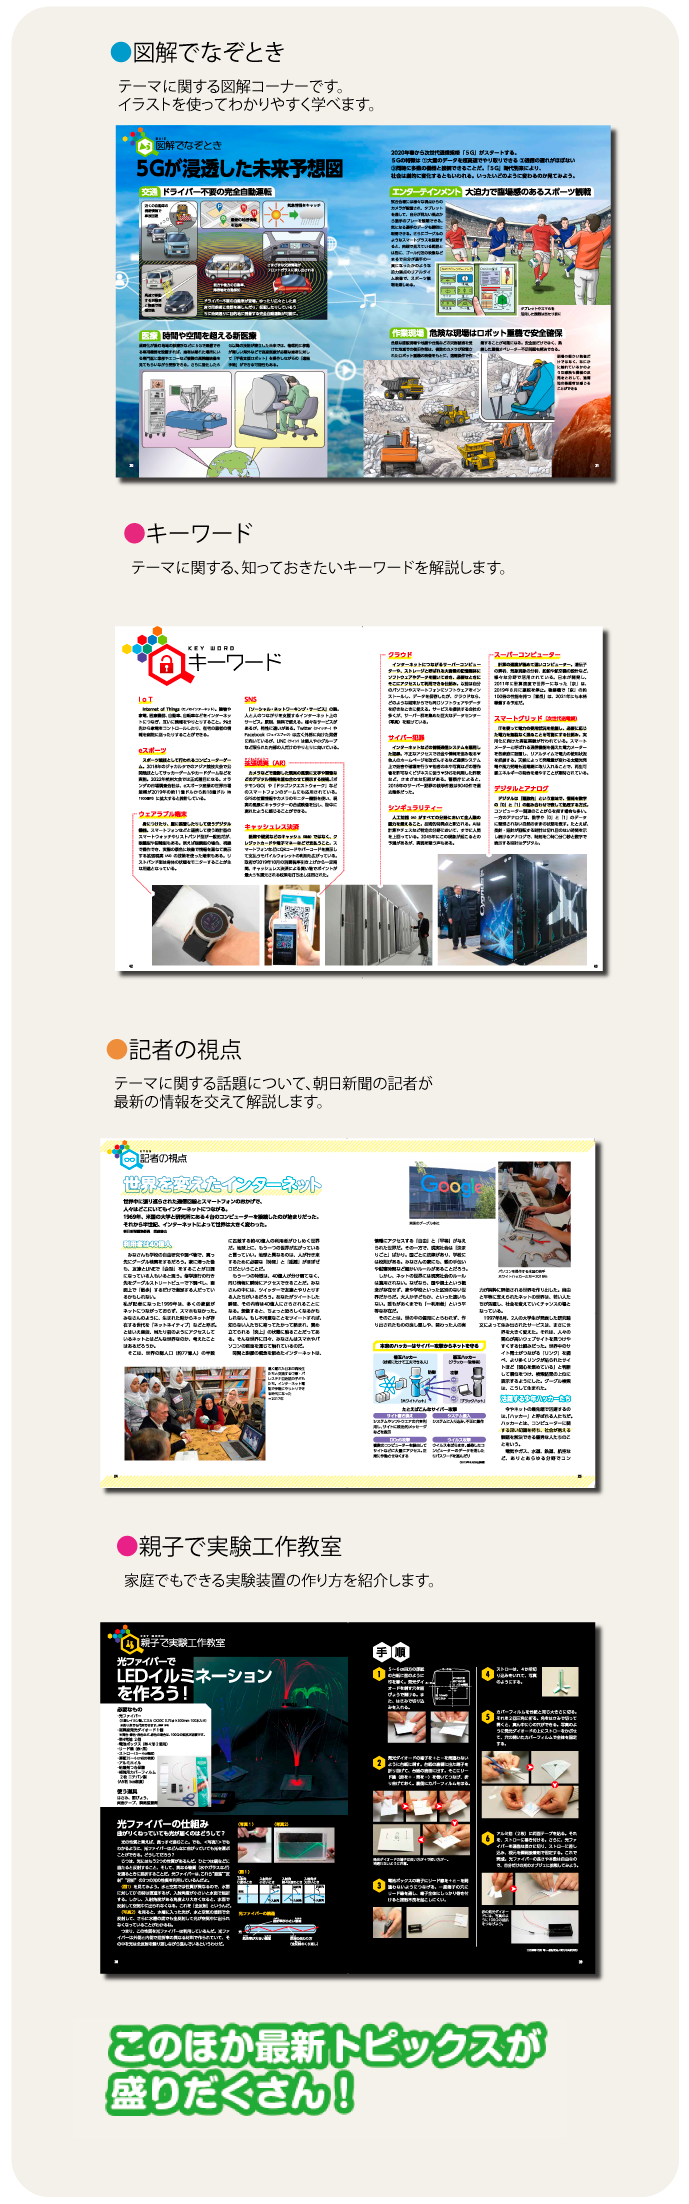 今解き教室サイエンス ― 朝日新聞で学ぶ総合教材「今解き教室」